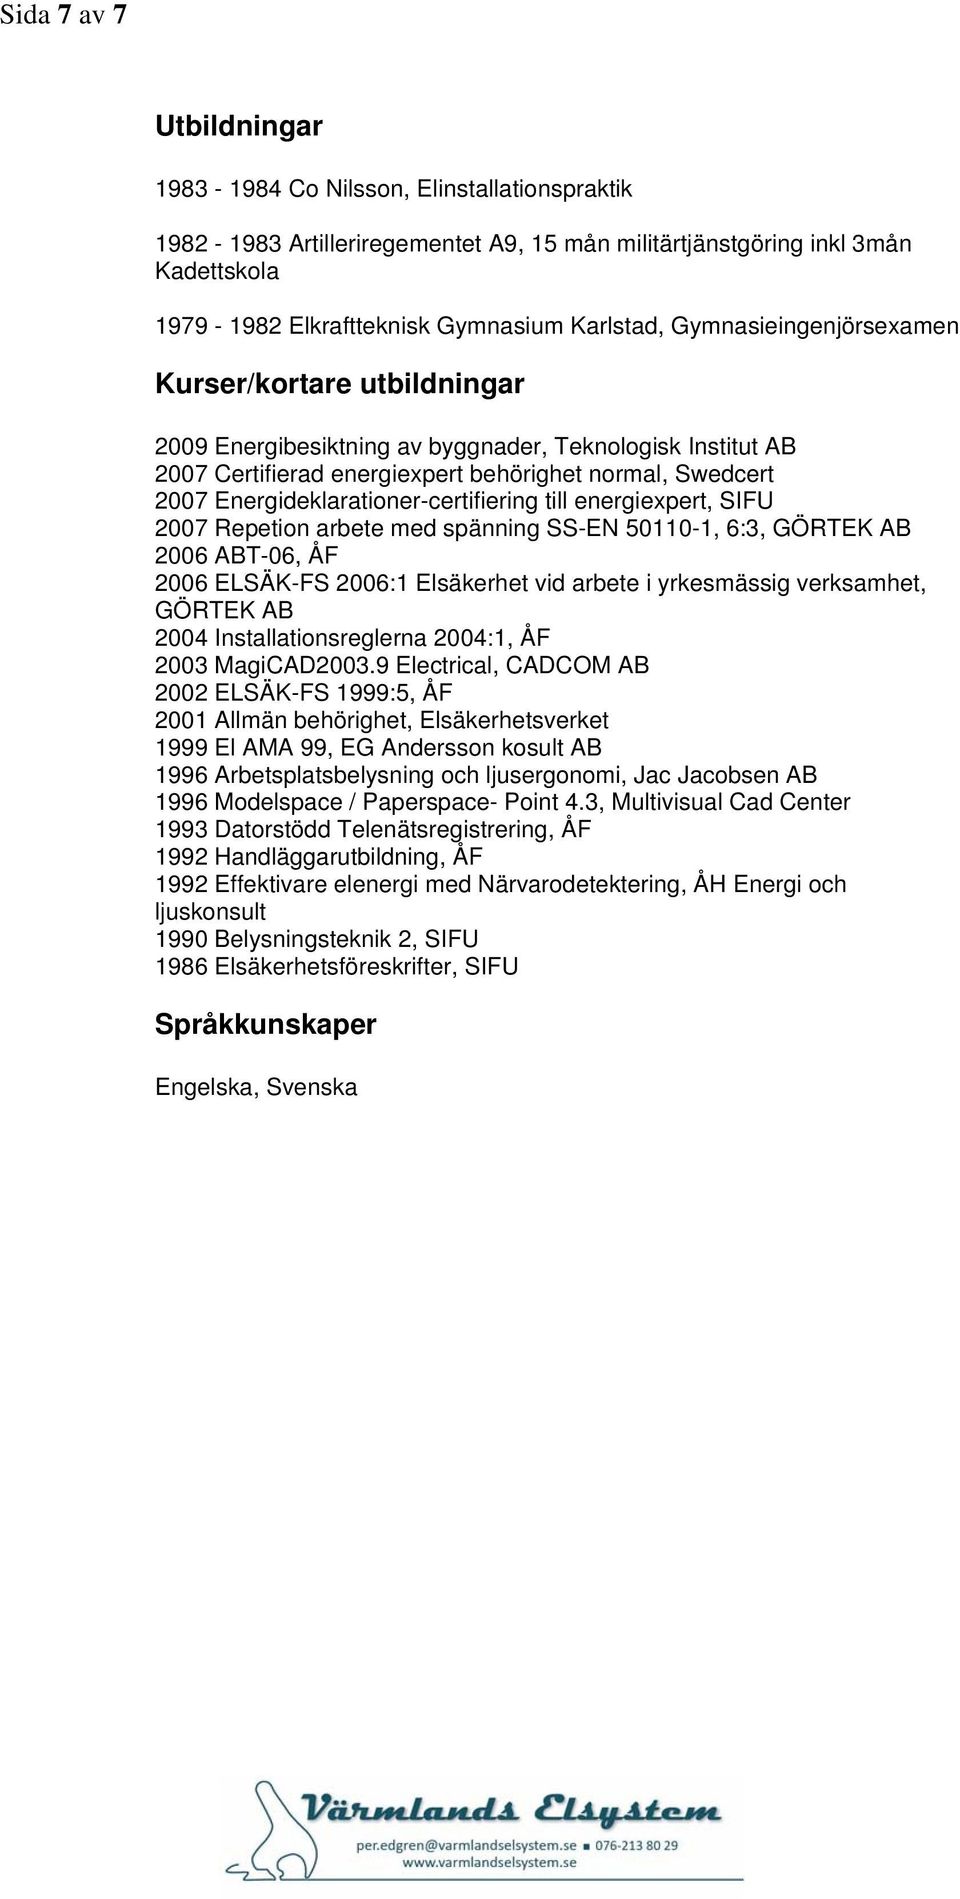 Energideklarationer-certifiering till energiexpert, SIFU 2007 Repetion arbete med spänning SS-EN 50110-1, 6:3, GÖRTEK AB 2006 ABT-06, ÅF 2006 ELSÄK-FS 2006:1 Elsäkerhet vid arbete i yrkesmässig